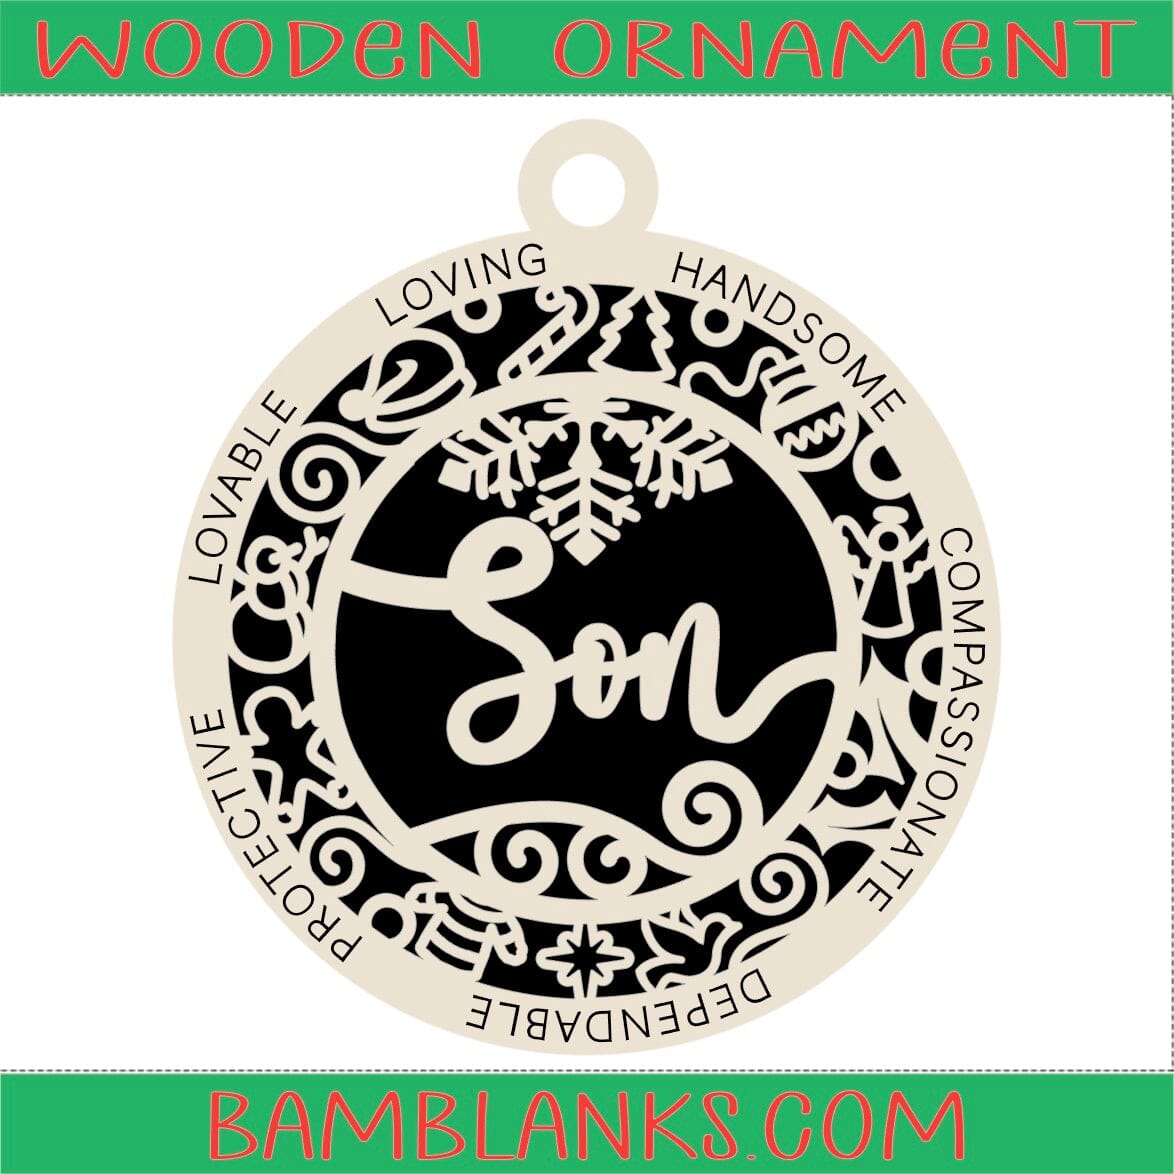 Son - Wood Ornament #W130